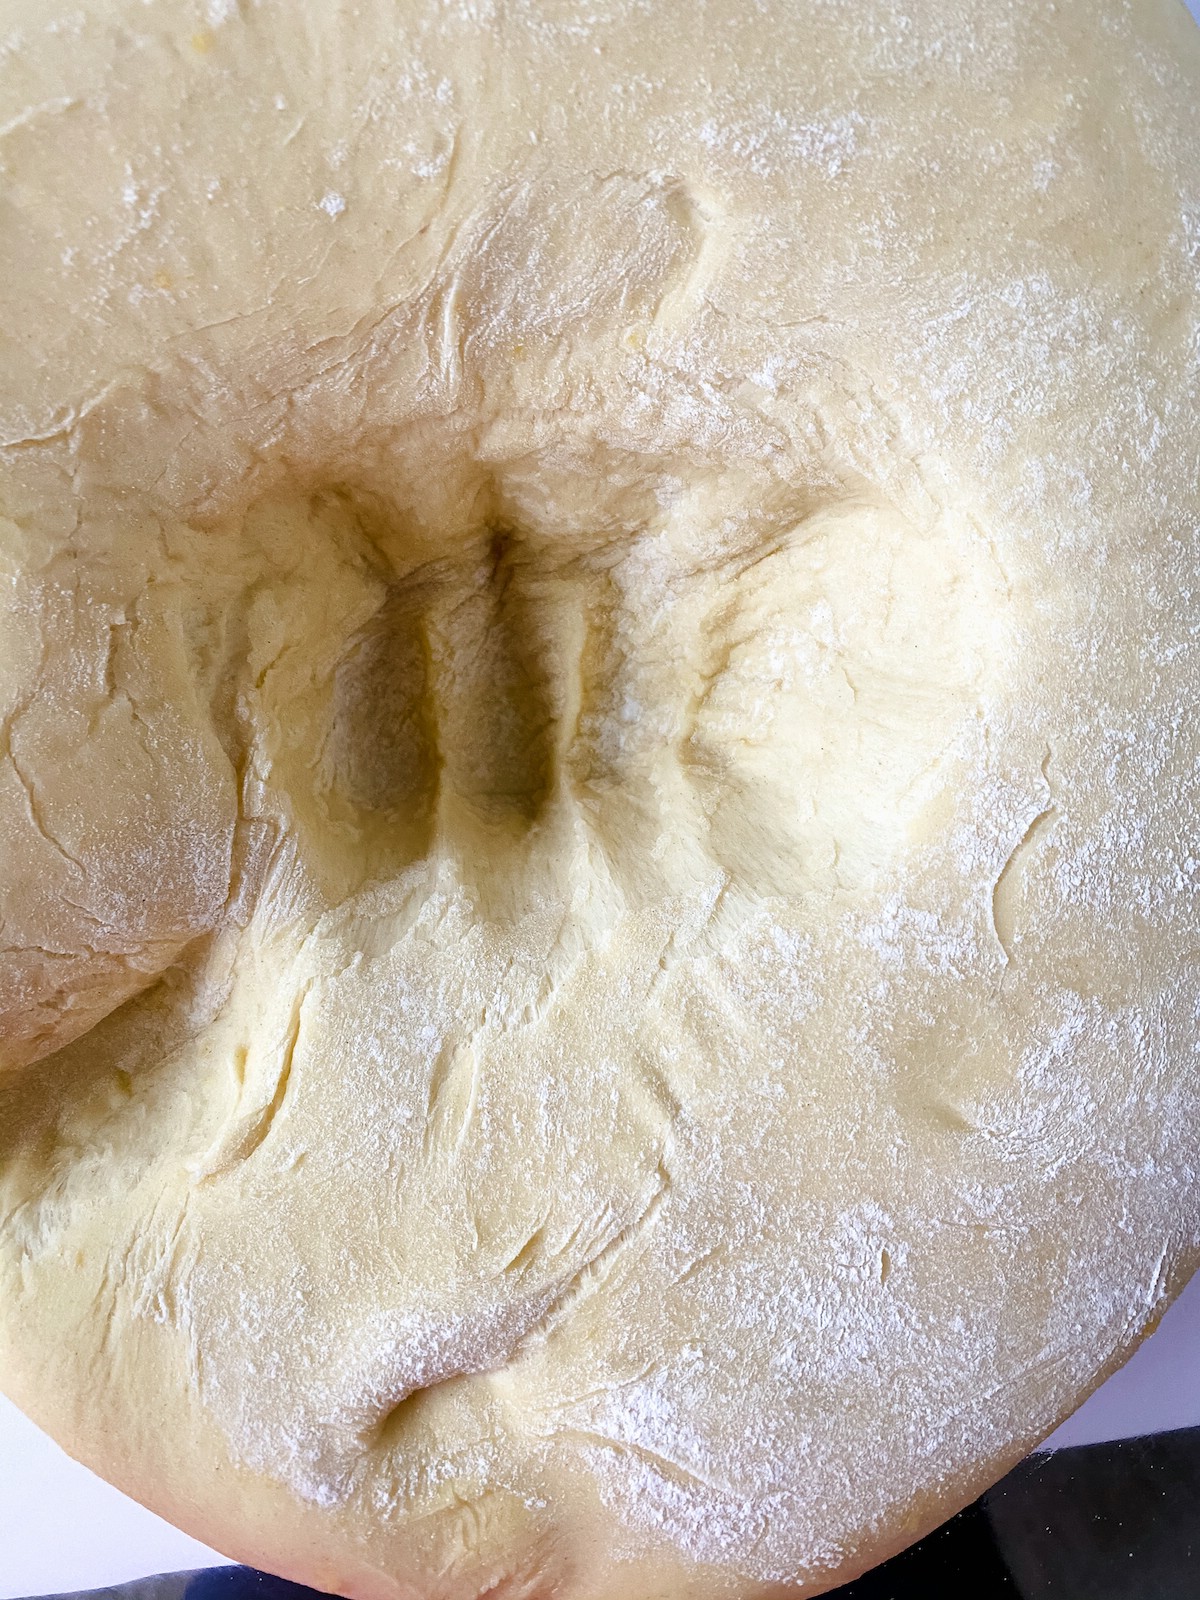 Ball of risen dough